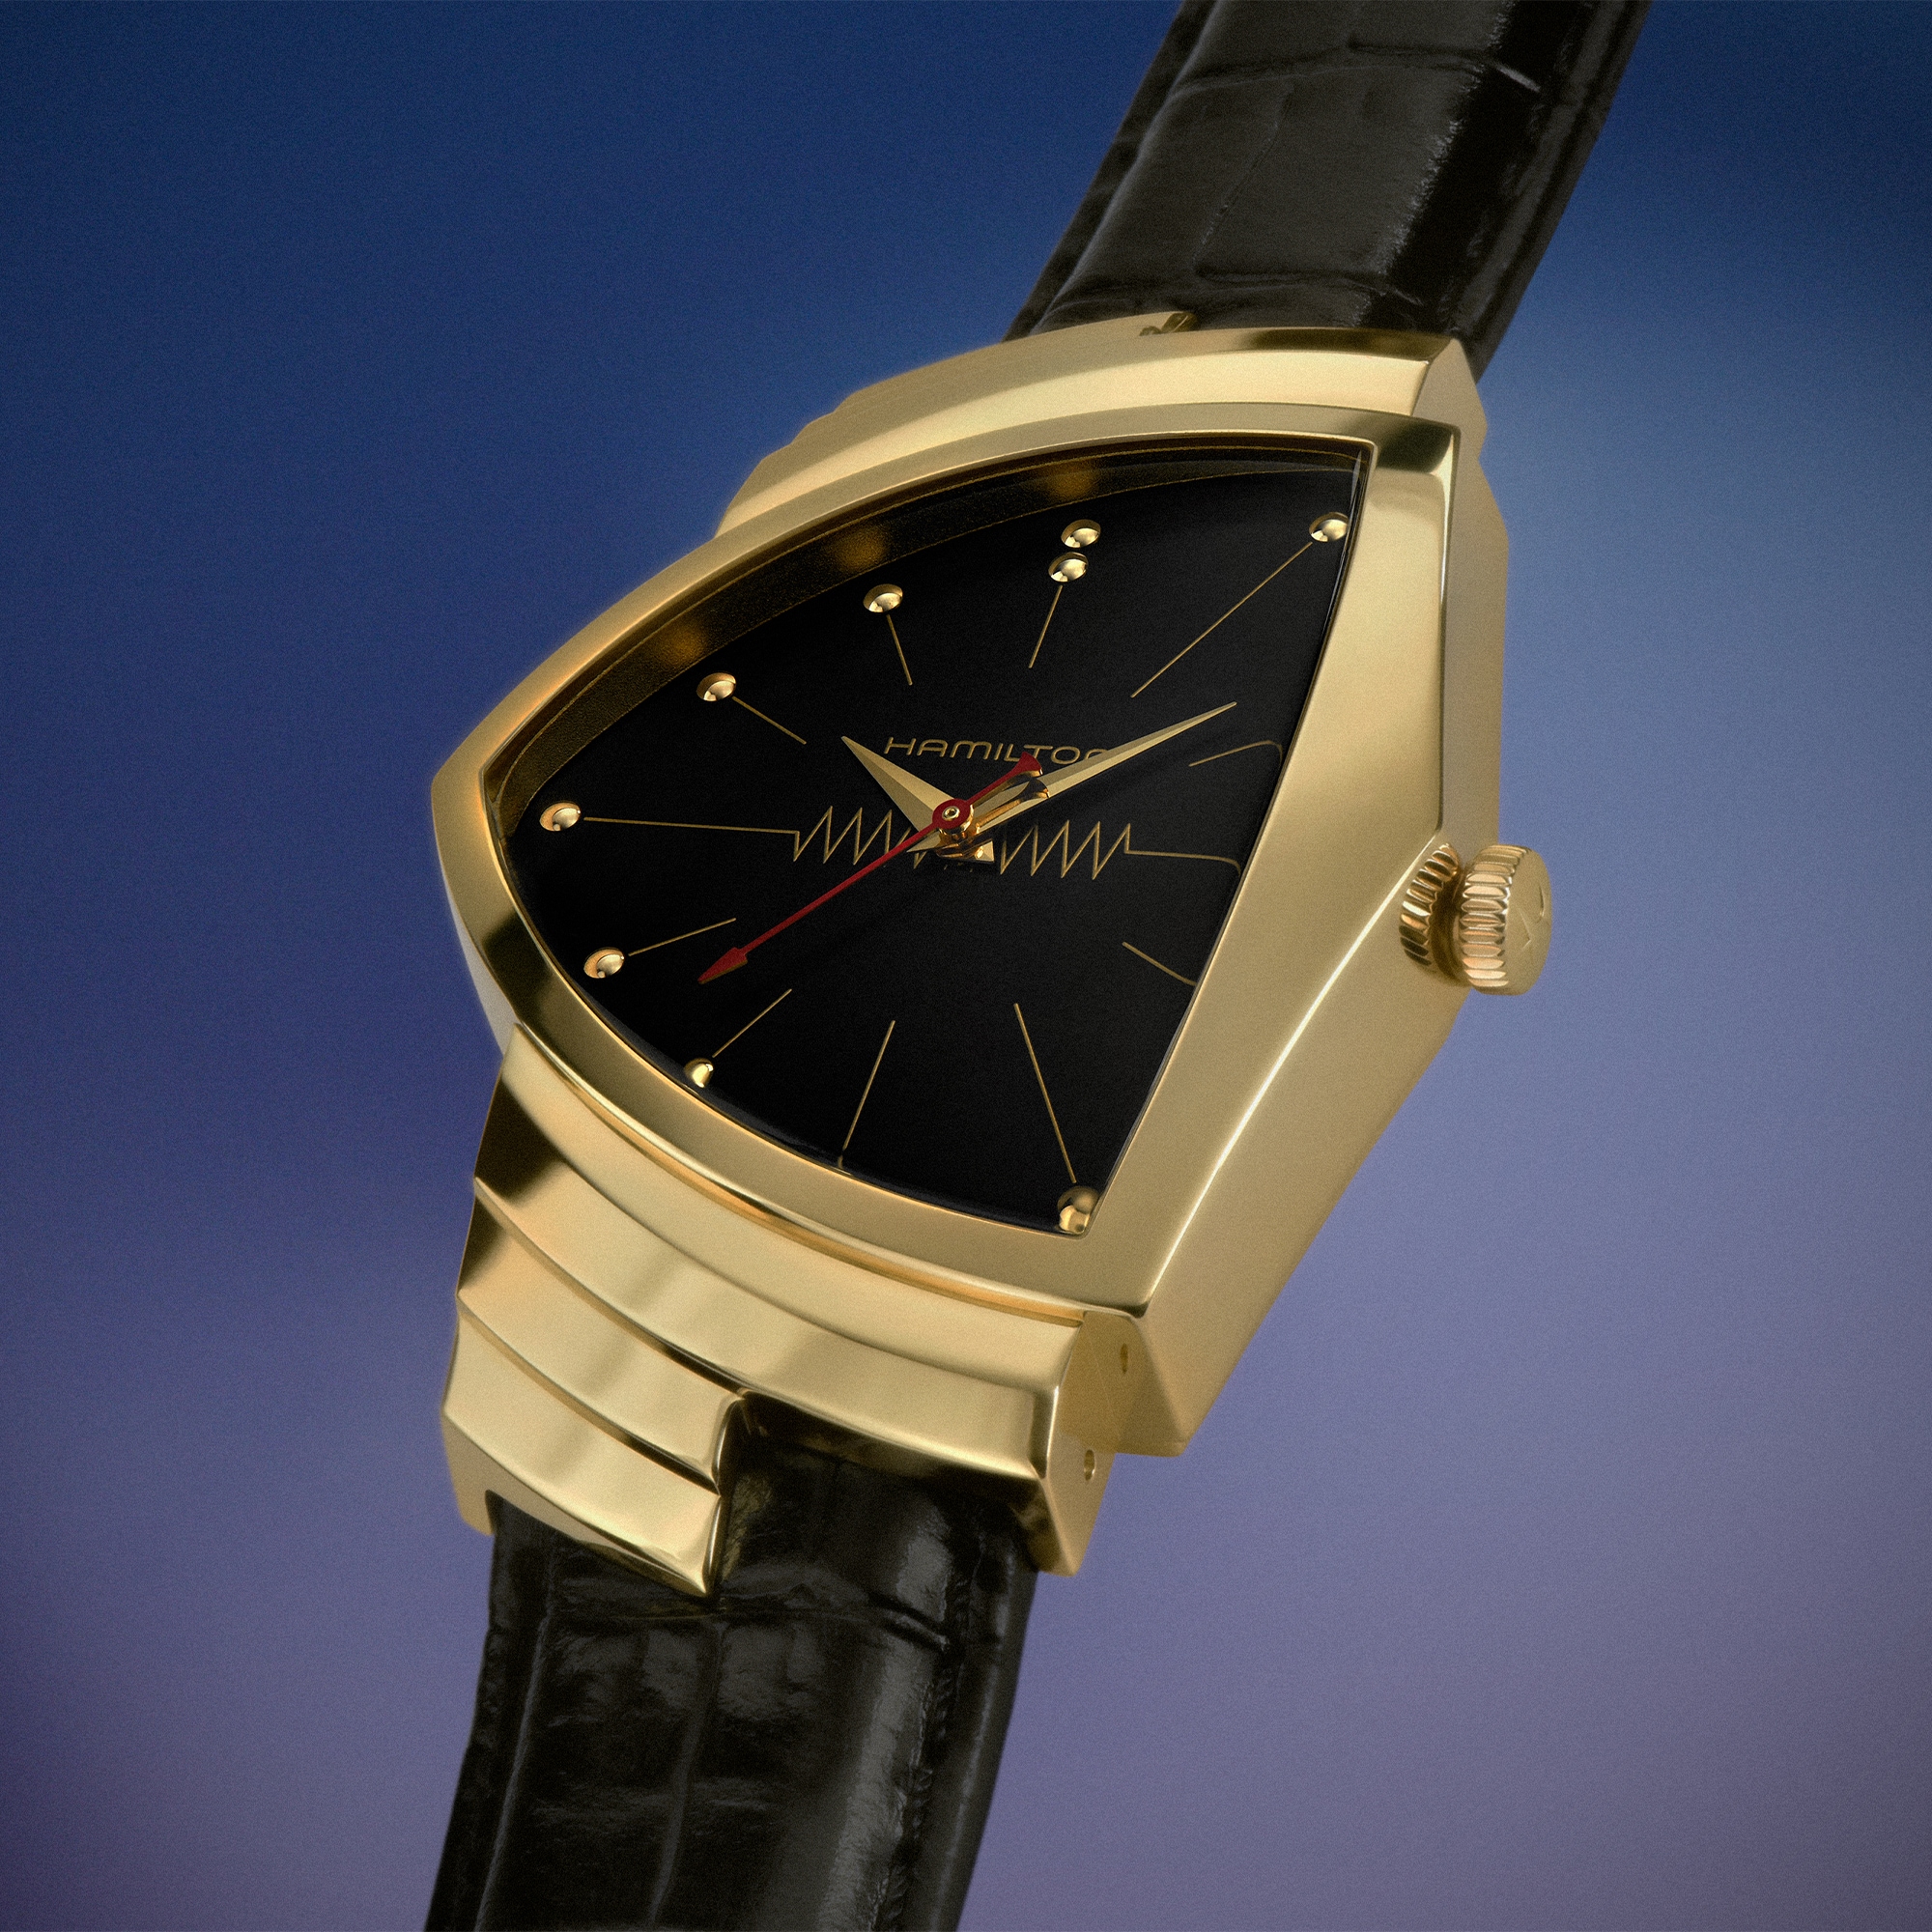 全球首款電子腕錶現以實心14K金質款盛大回歸